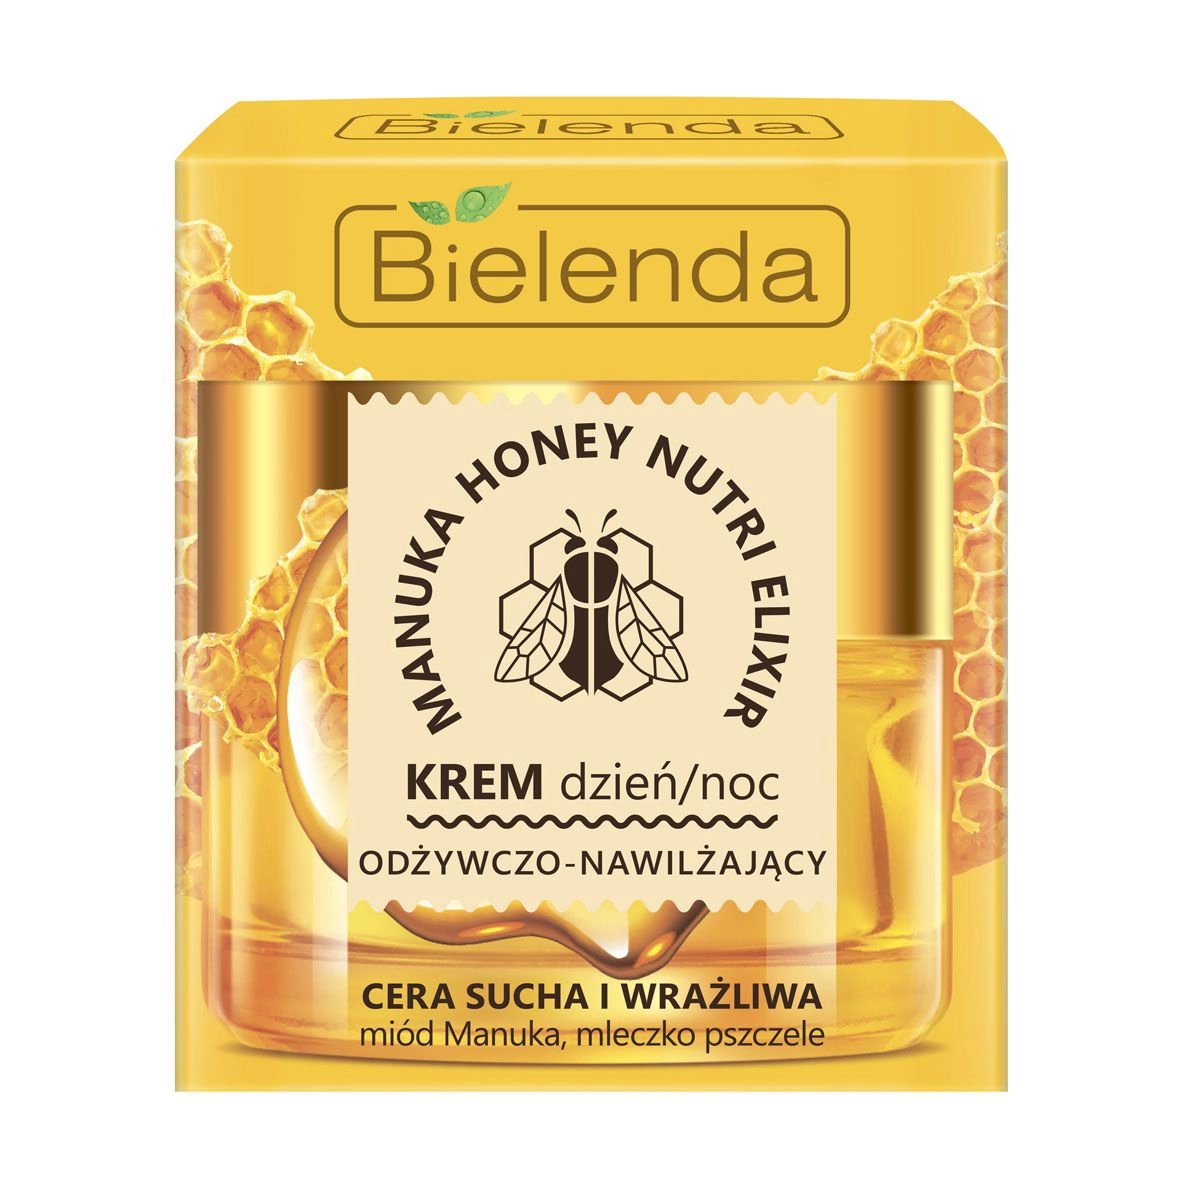 Питательный и увлажняющий крем для лица для сухой и чувствительной кожи - Bielenda Manuka Honey, 50 мл - фото N1